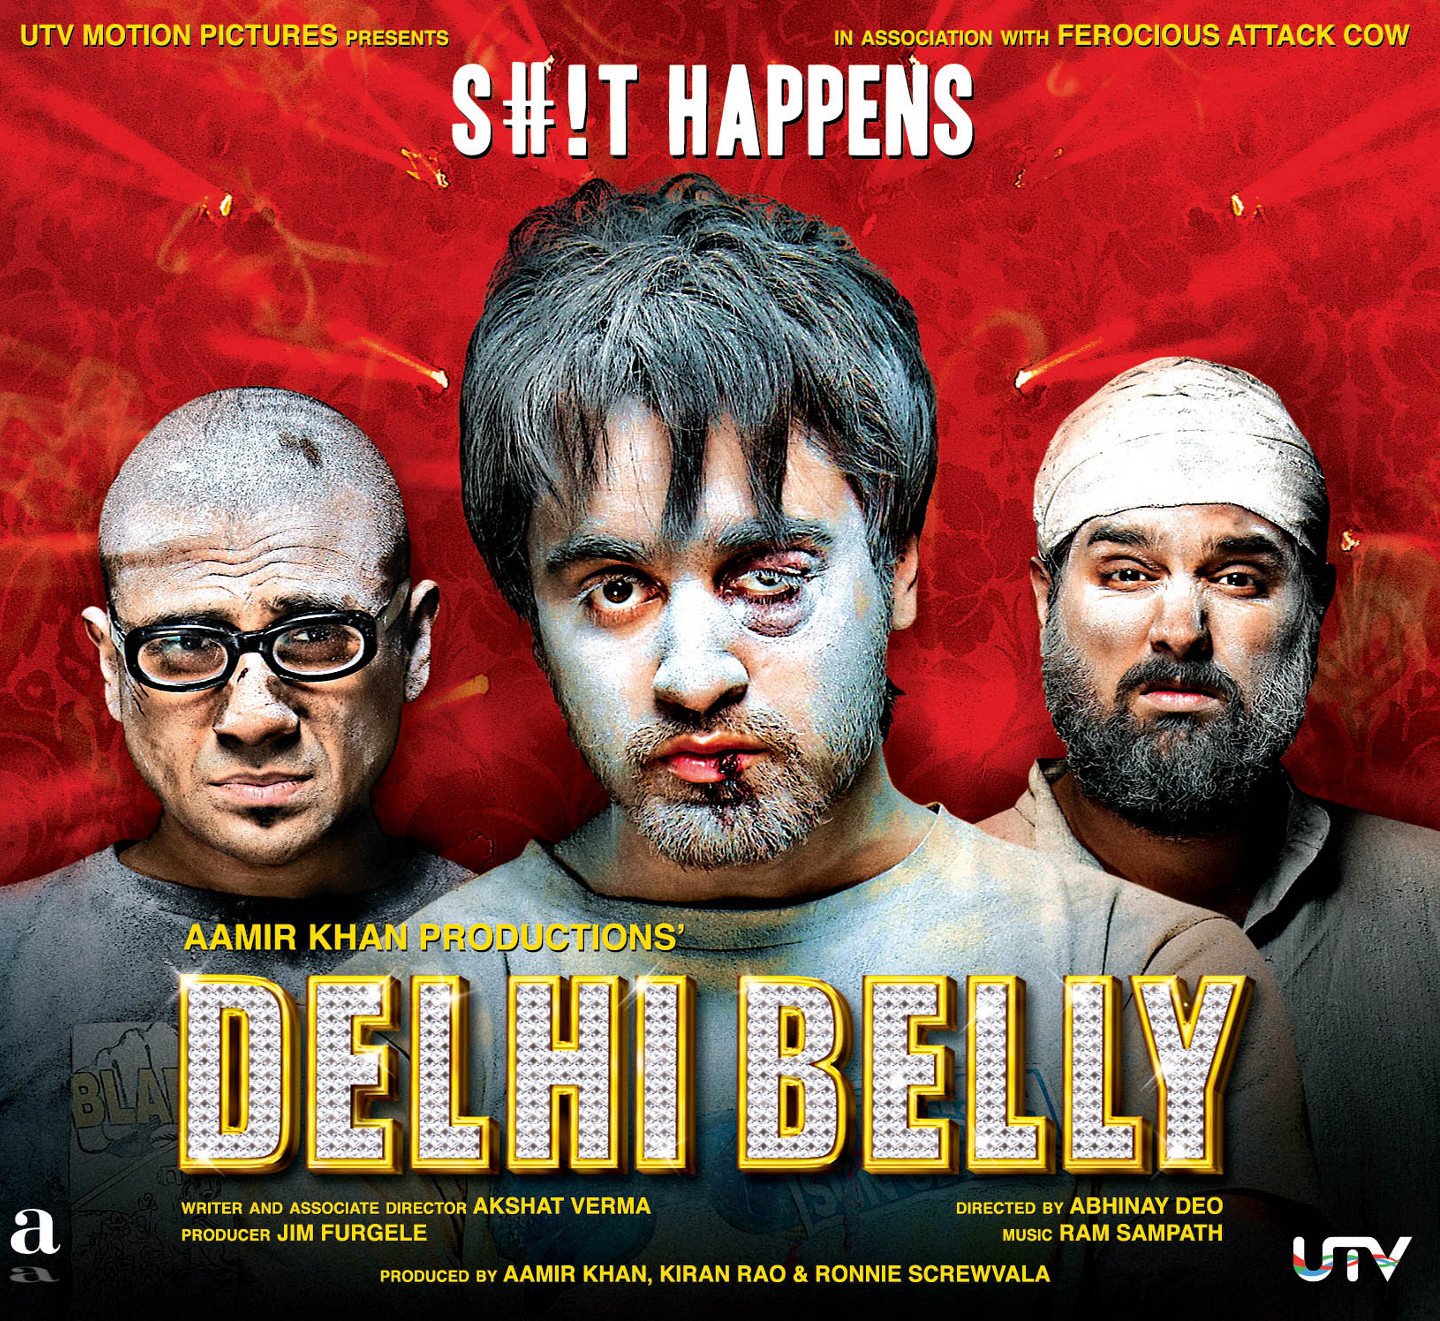 'डेल्ही बेली' हा चित्रपट भारतीय प्रेक्षकांच्या खूप पसंतीस उतरला असला तरी नेपाळमध्ये या चित्रपटावर बंदी आहे.